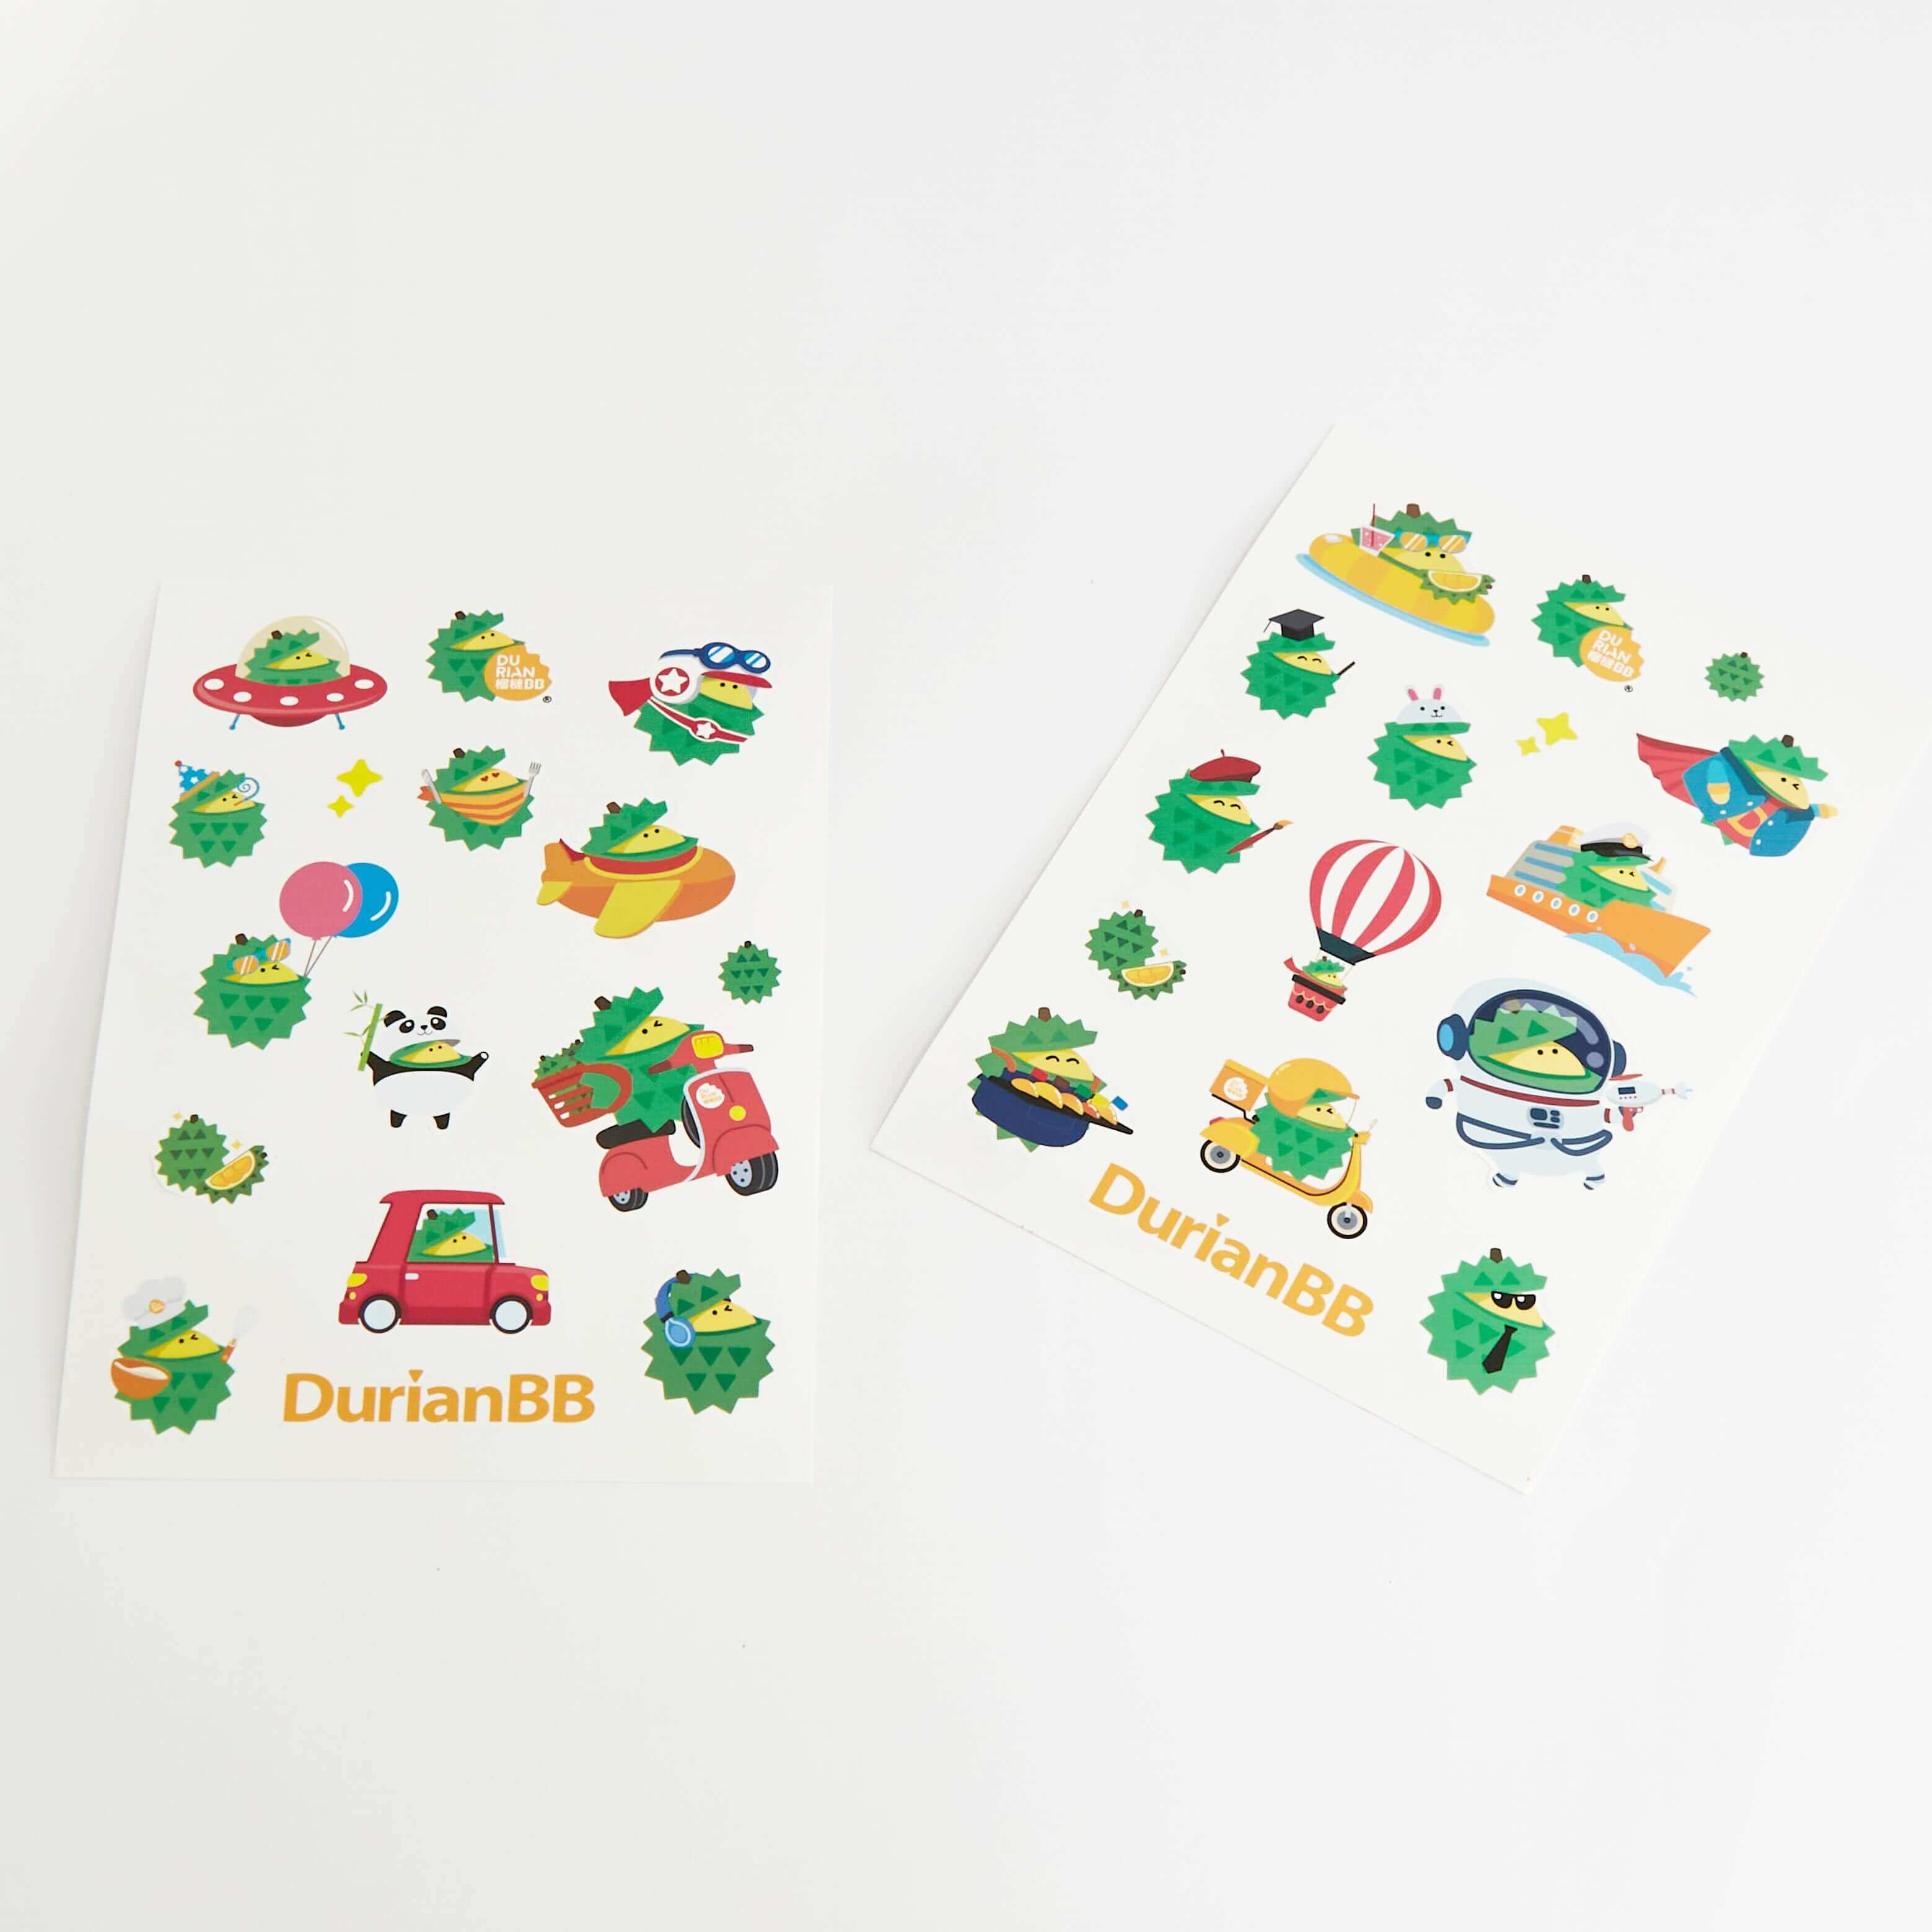 DurianBB Merchandise A5 Sticker Souvenir for kids